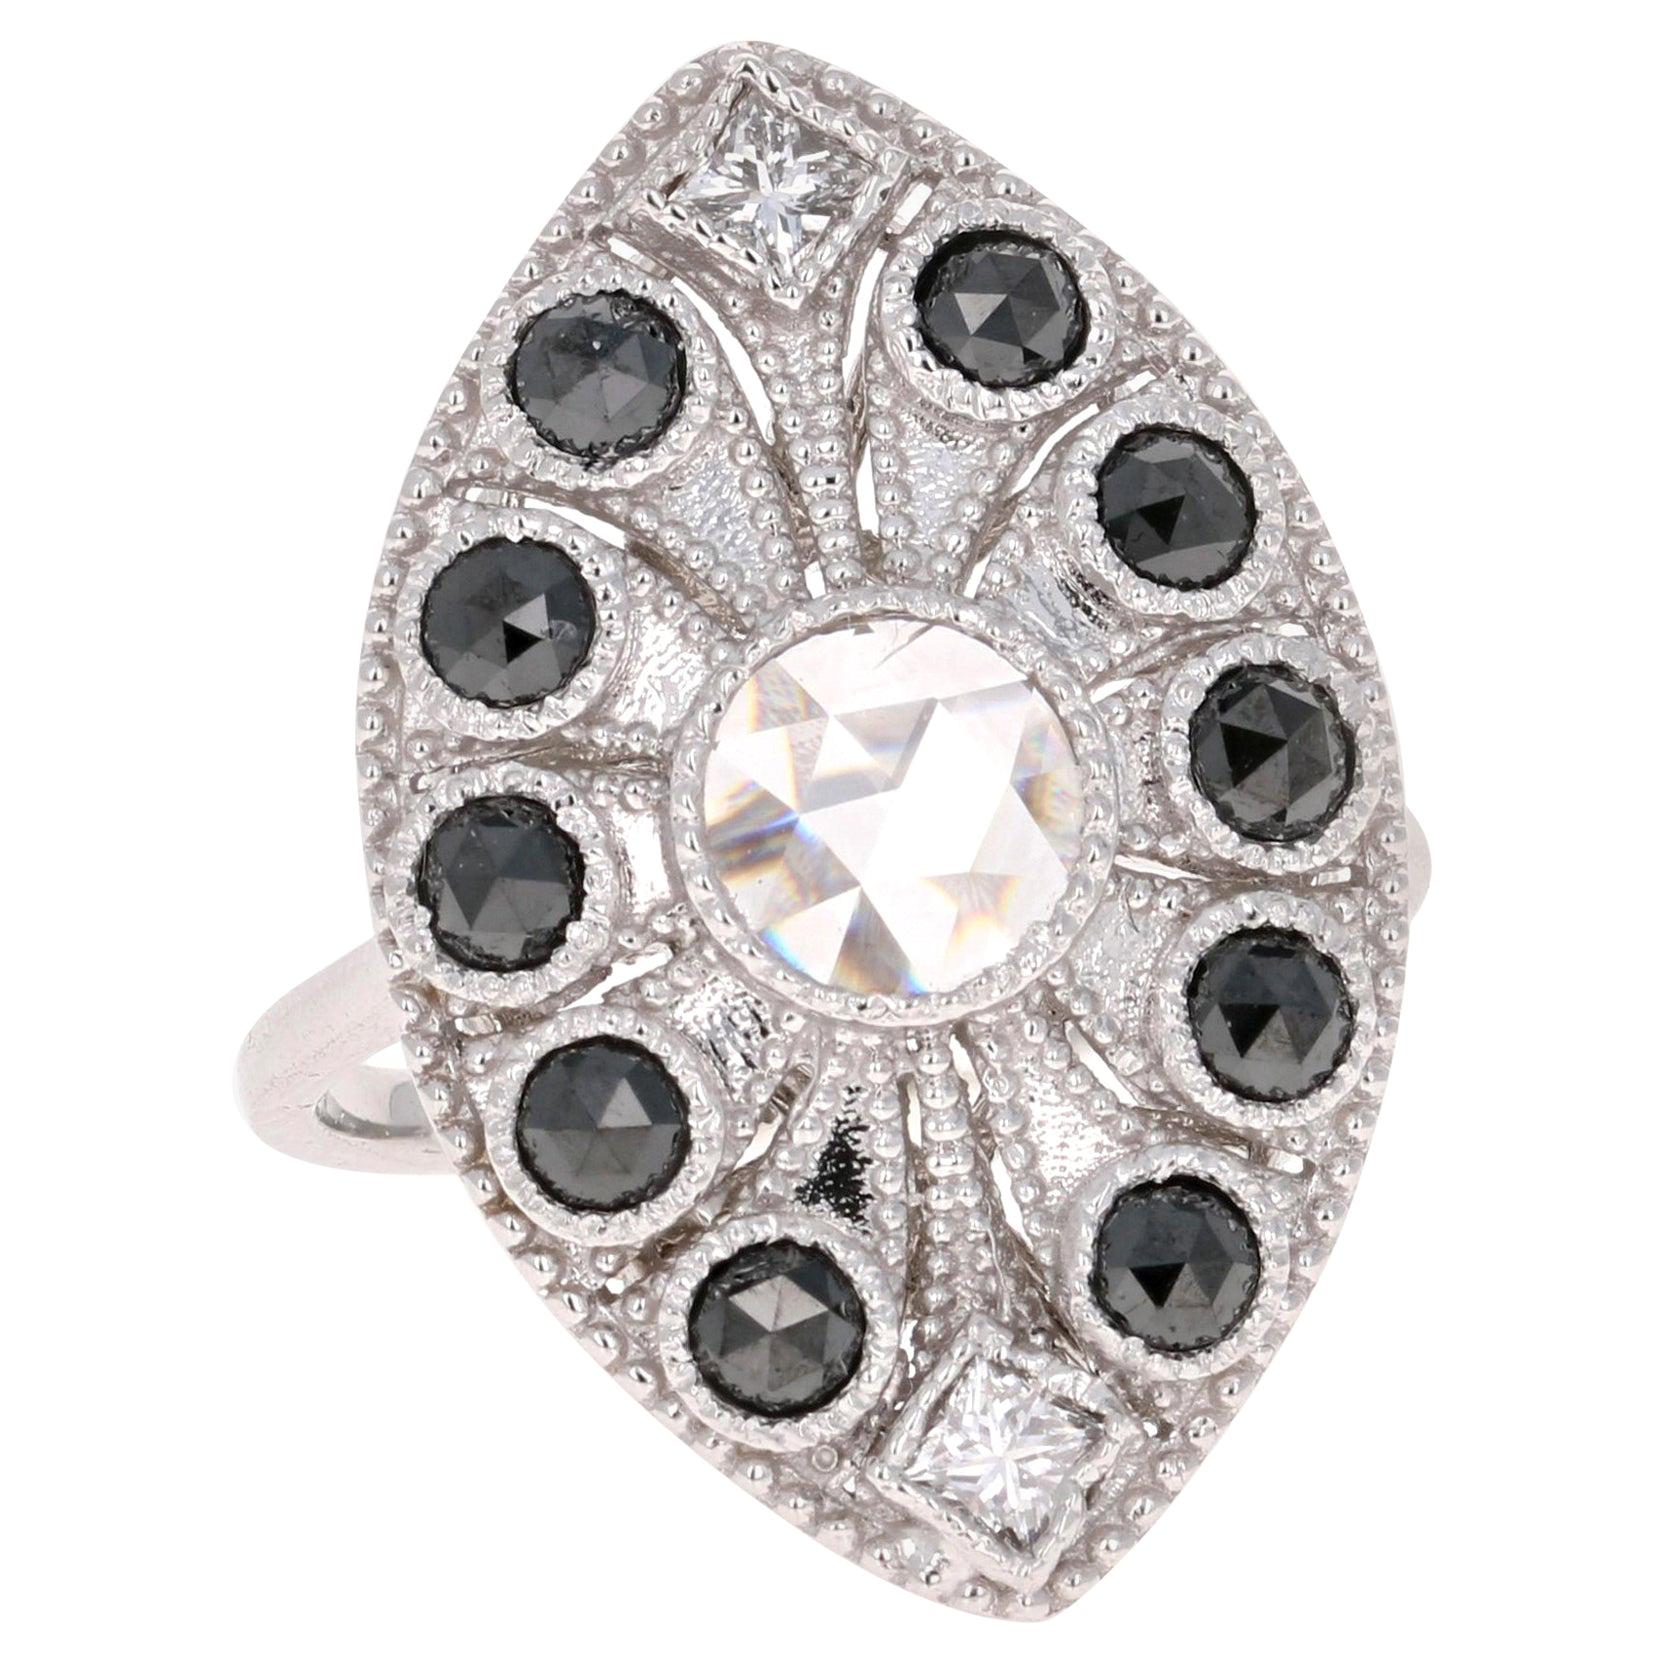 1.58 Carat Black and White Rose Cut Diamond Art Deco 18 Karat White Gold Ring